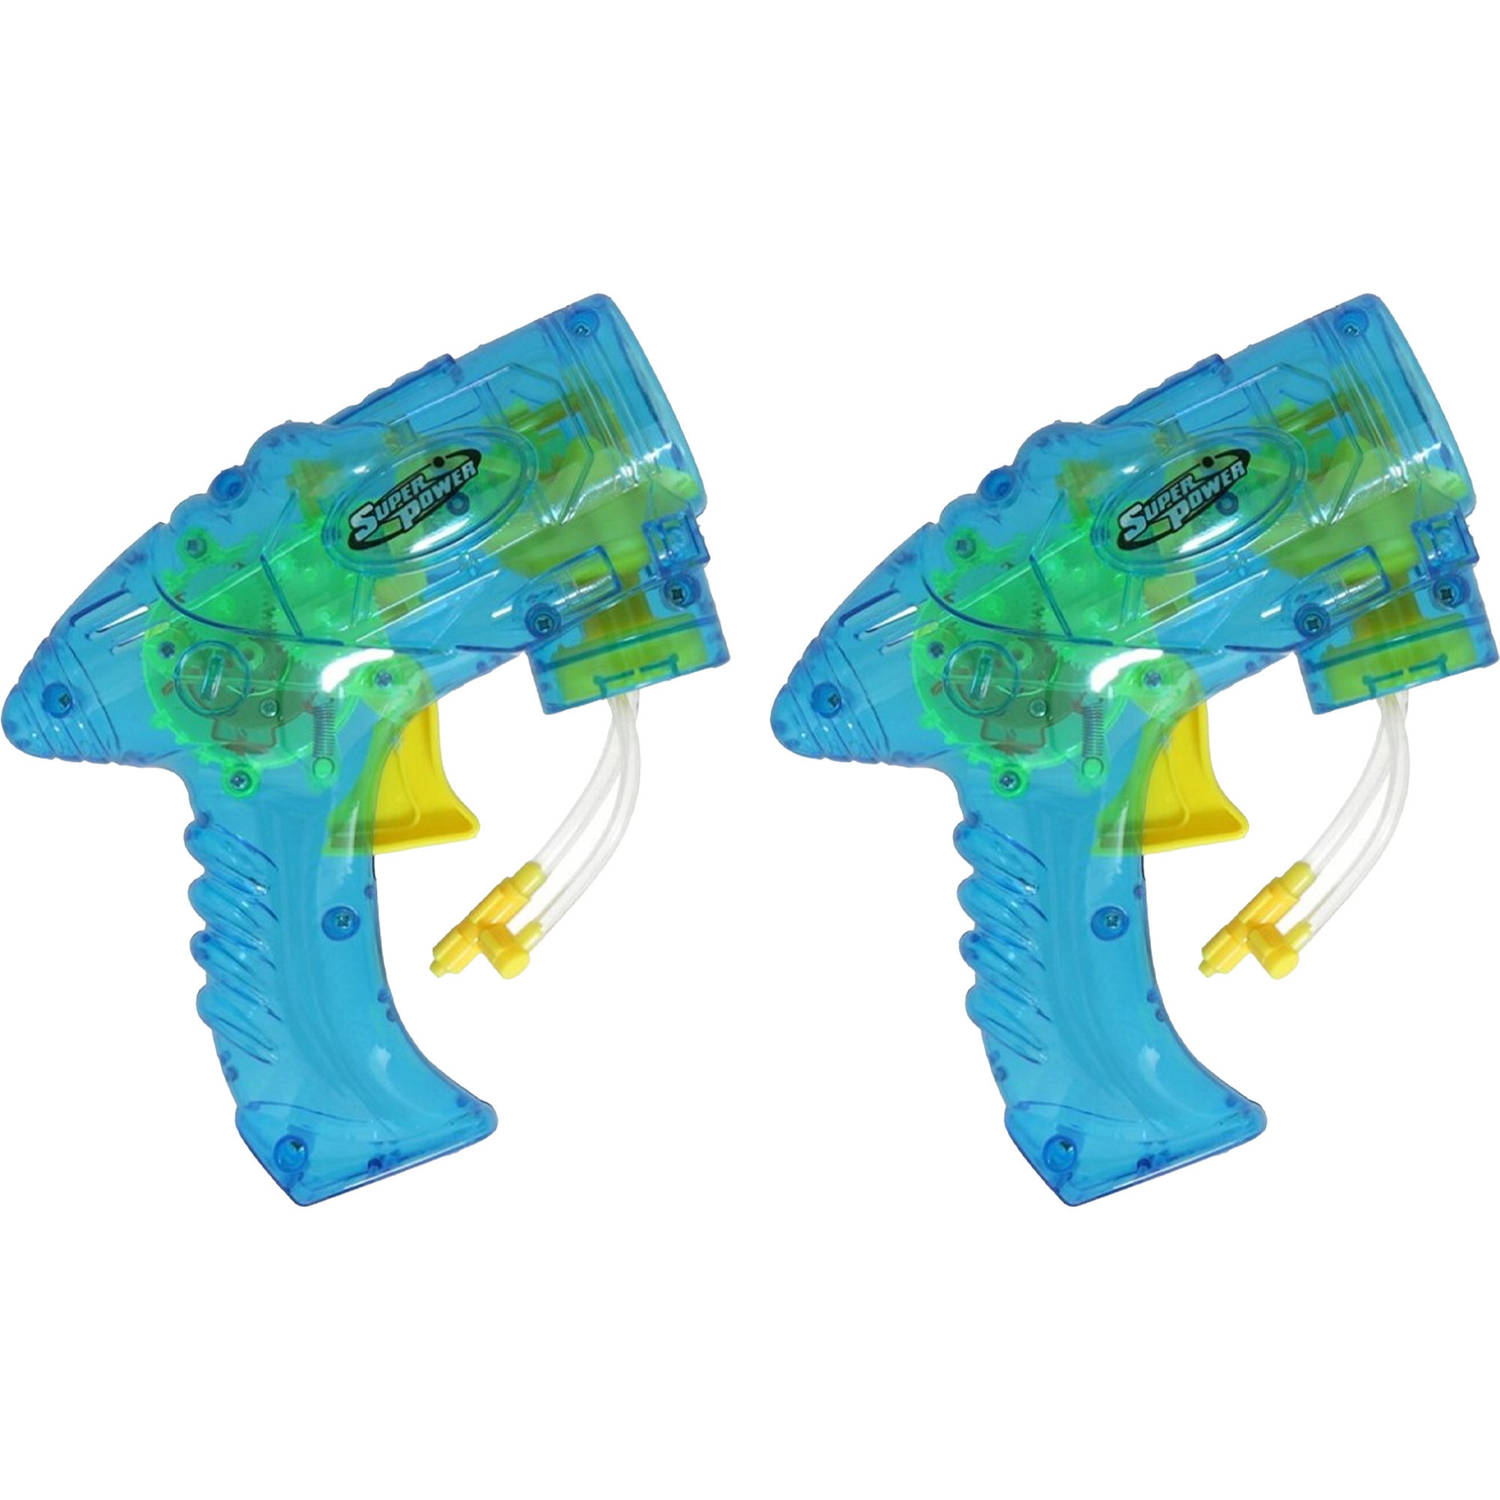 Bellenblaas speelgoed pistool 2x met vullingen blauw 15 cm plastic bellen blazen Bellenblaas